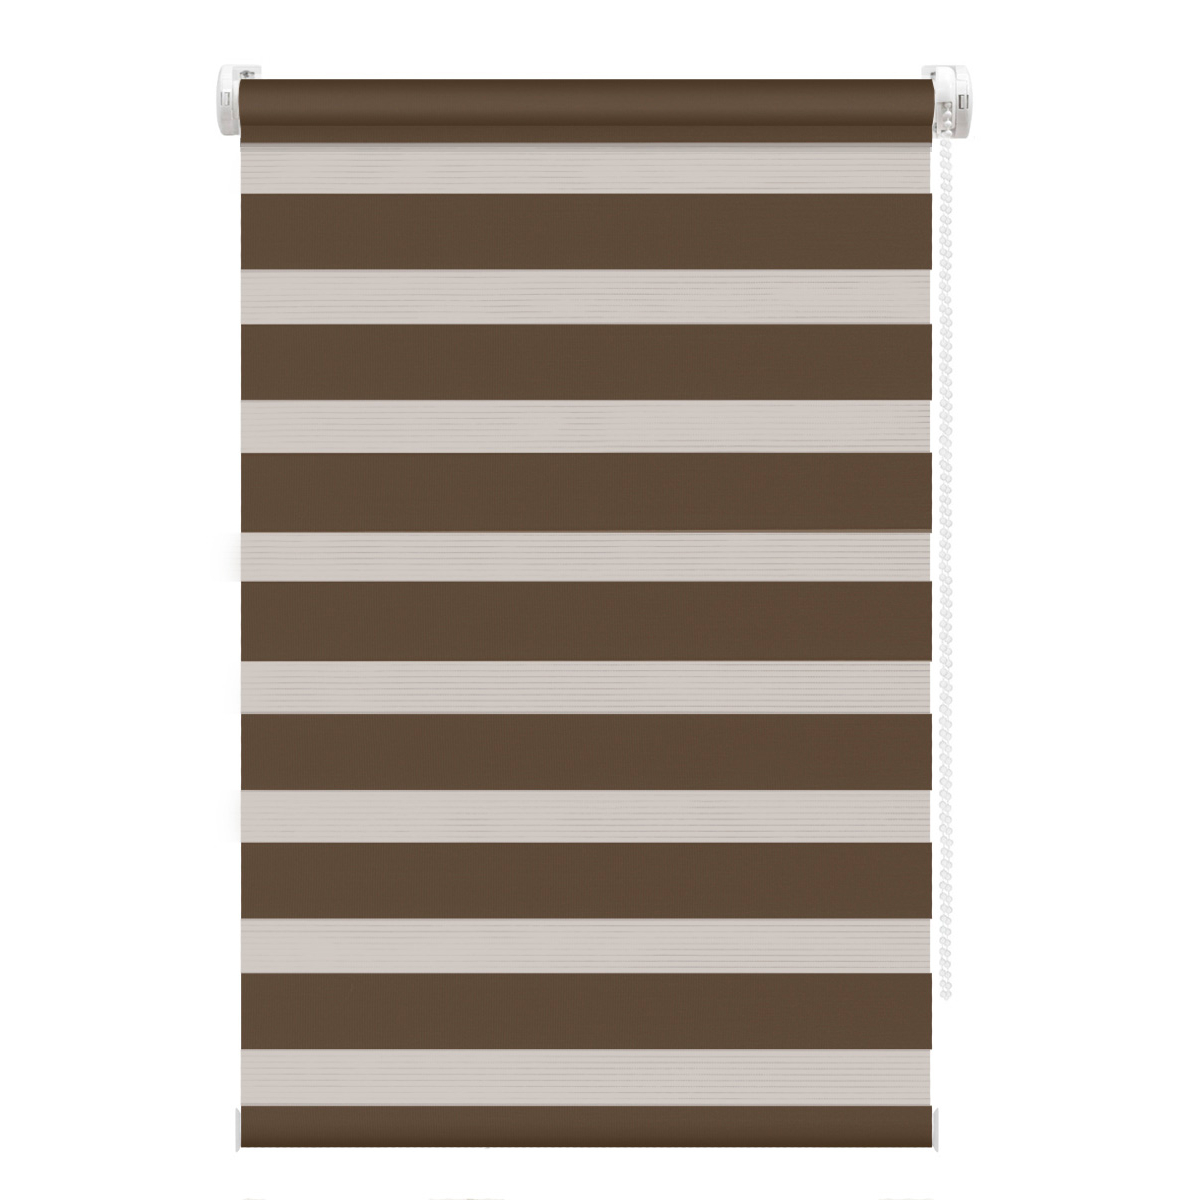 Рулонная штора FixLine Amigo Base День-Ночь коричневая 55х160 см, цвет коричневый, размер 55х160 - фото 1